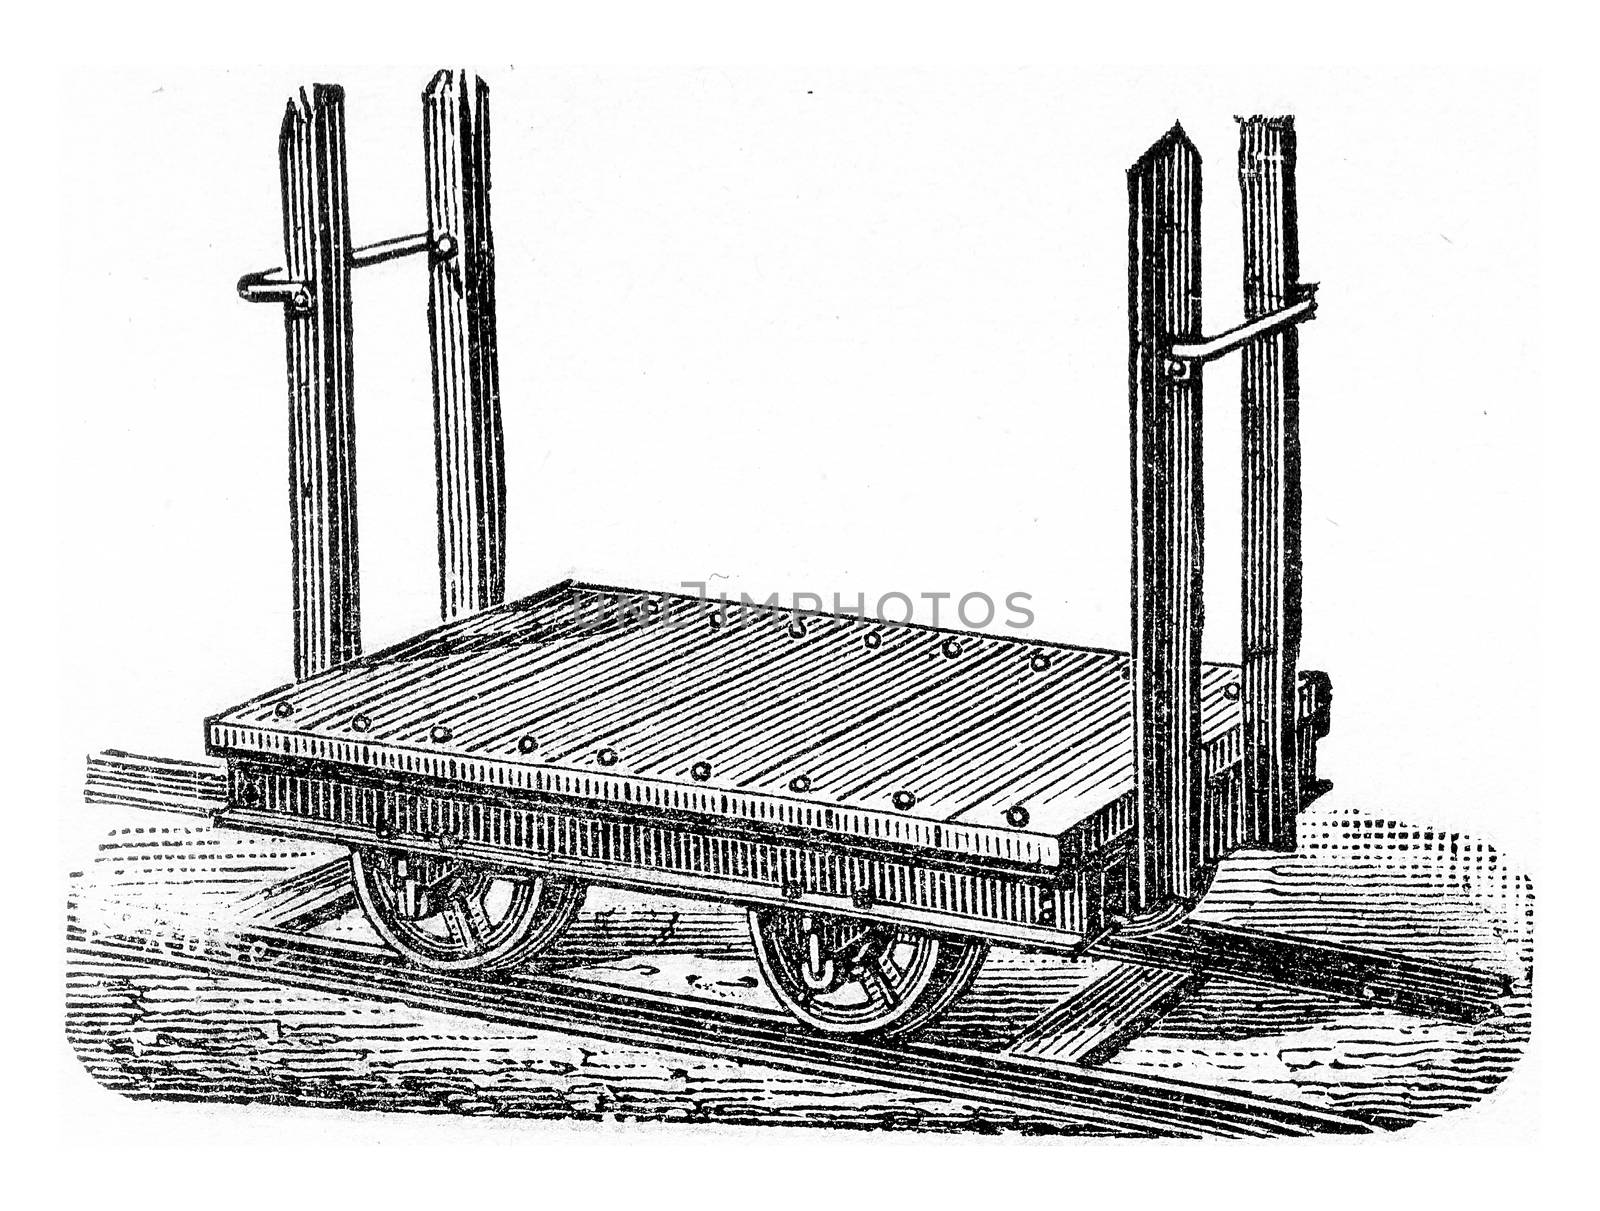 Wagon platform to transport logs, vintage engraved illustration.
